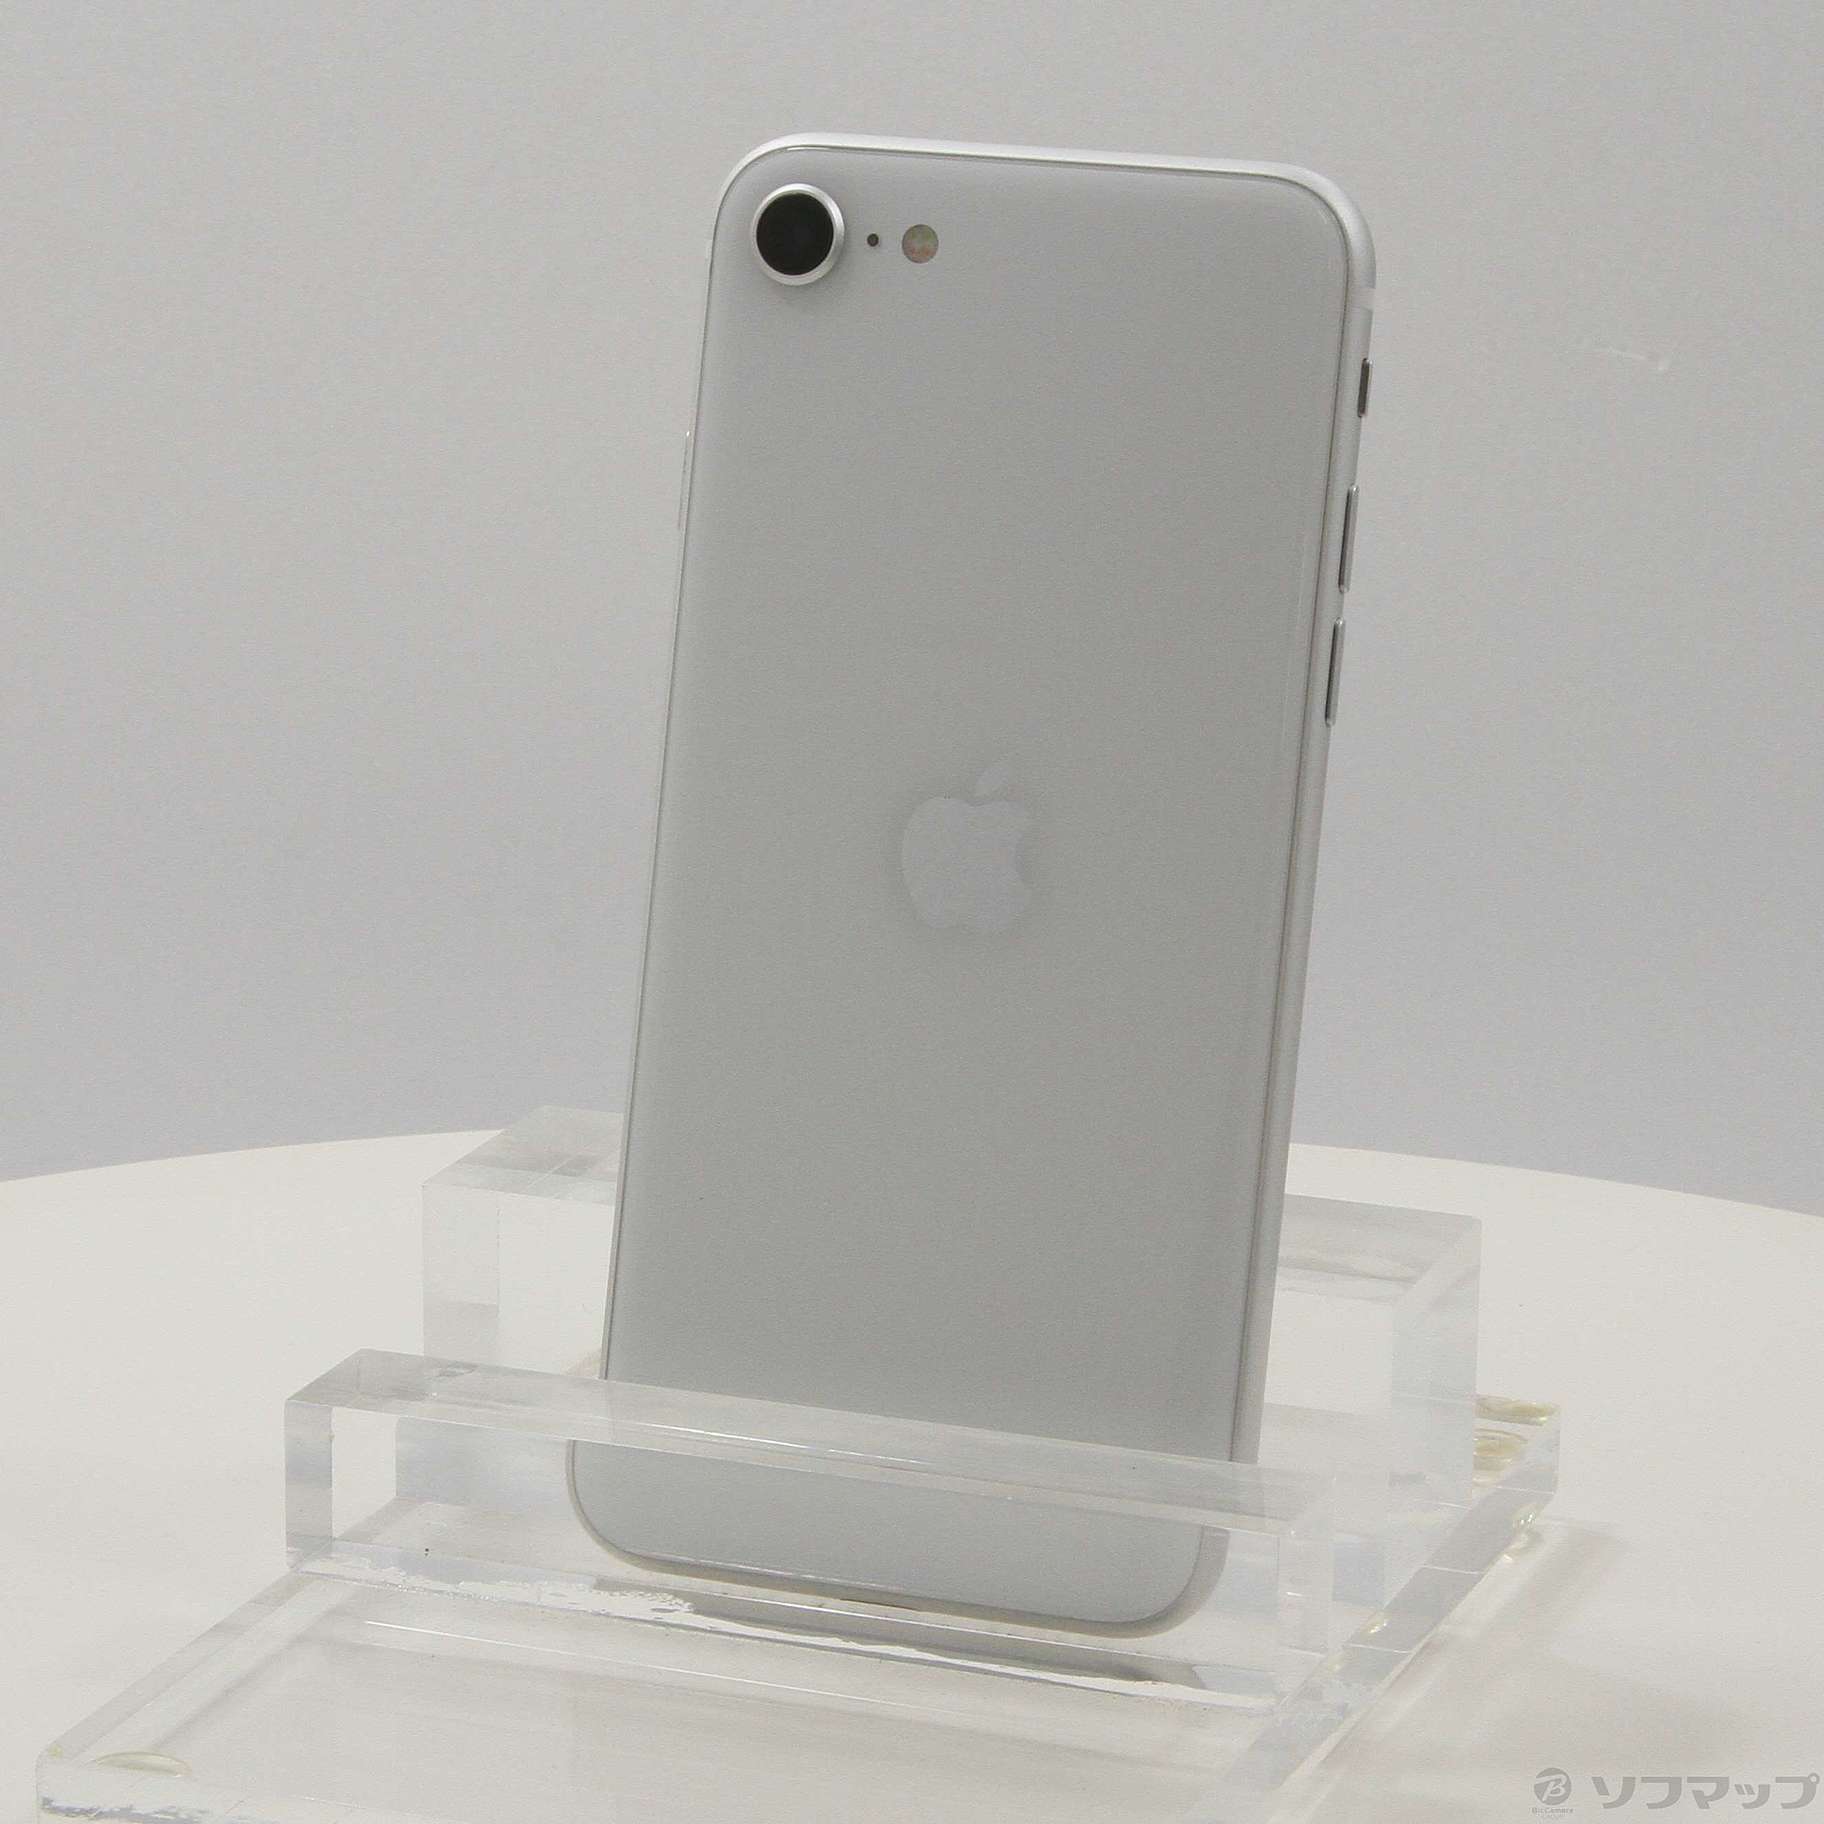 販促モール Apple iPhone SE 第2世代 128GBホワイトMXD12J/A | www